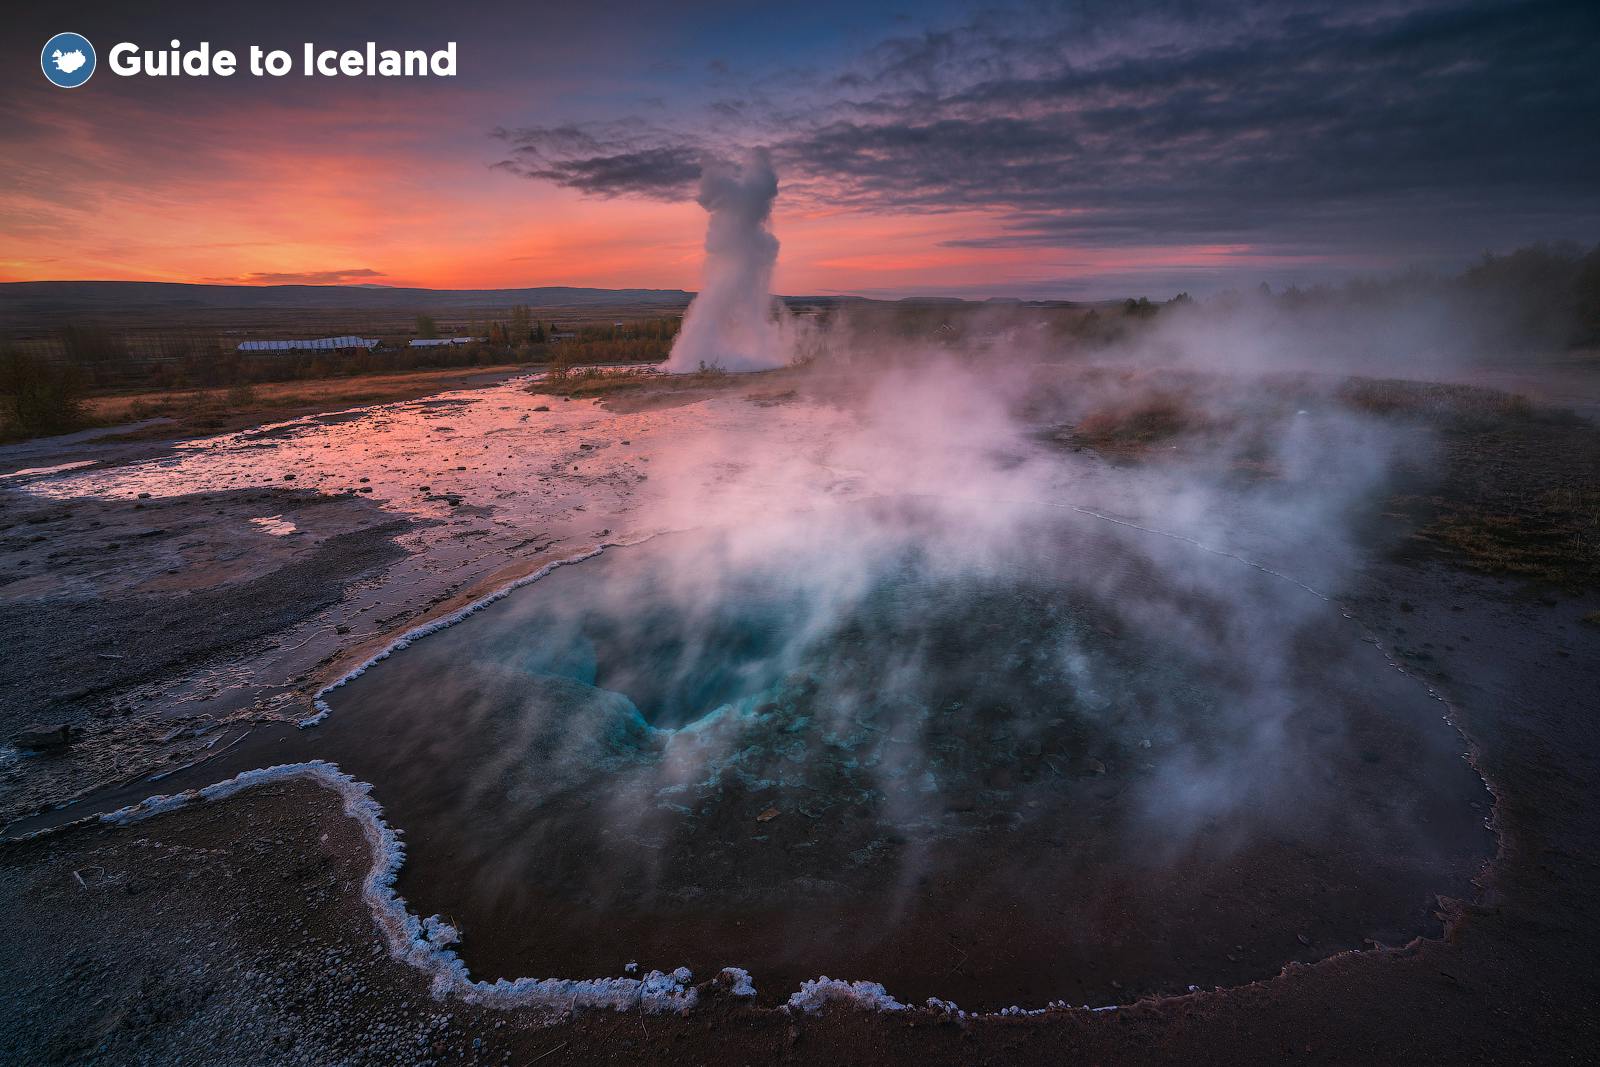 Il geyser Strokkur erutta regolarmente, così i visitatori possono assistere allo spettacolo.